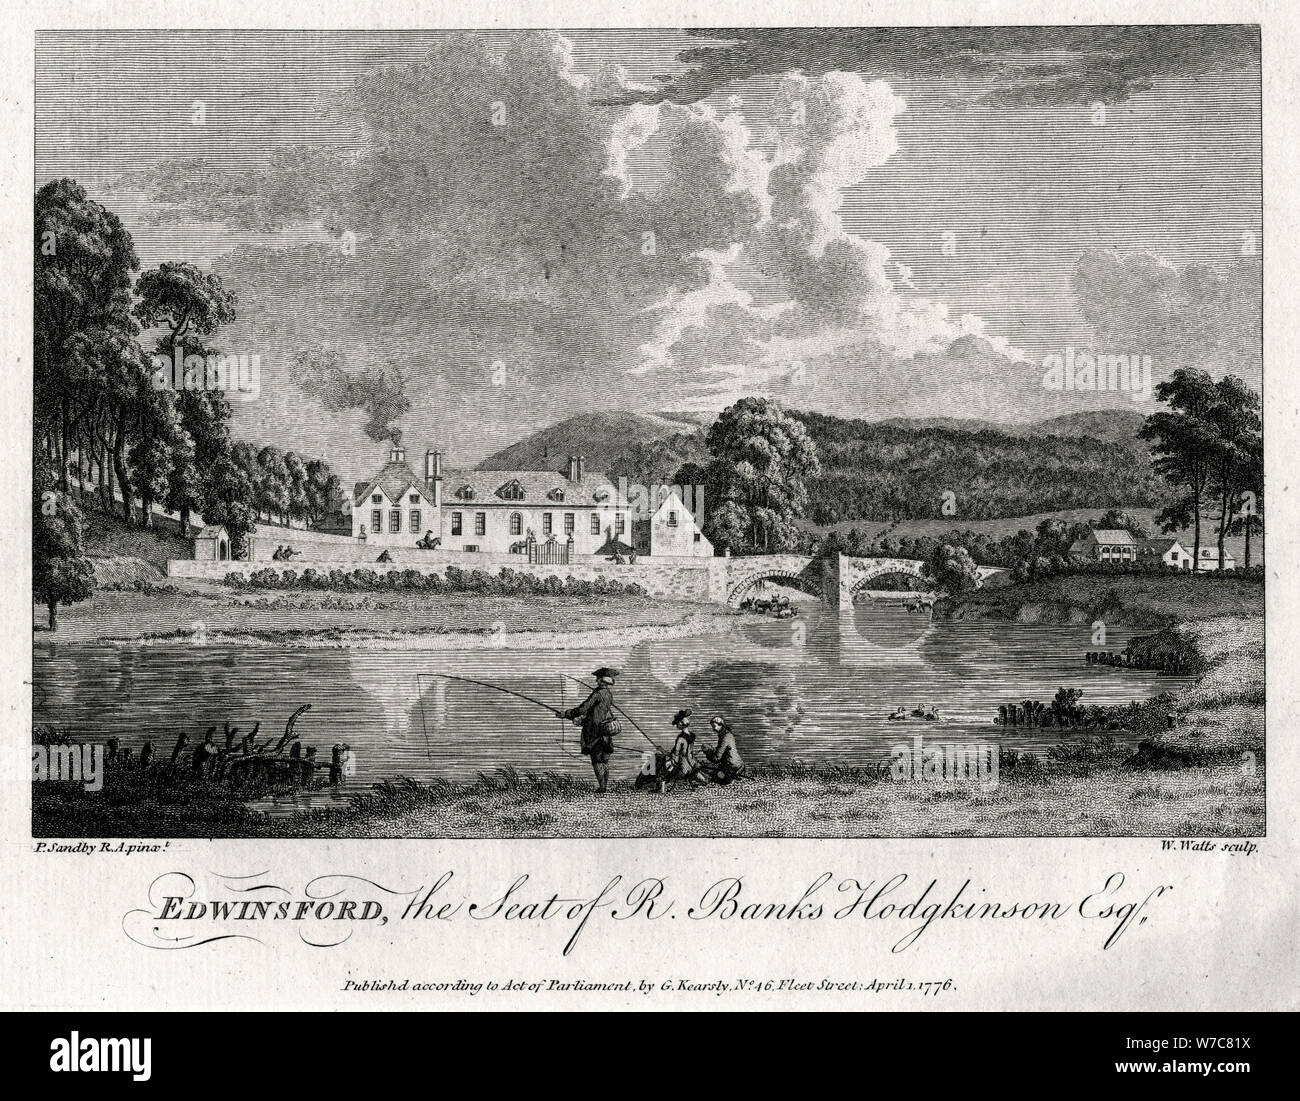 "Edwinsford, la sede di R Banche Hodgkinson Esq', Carmarthenshire, 1776. Artista: William Watt Foto Stock